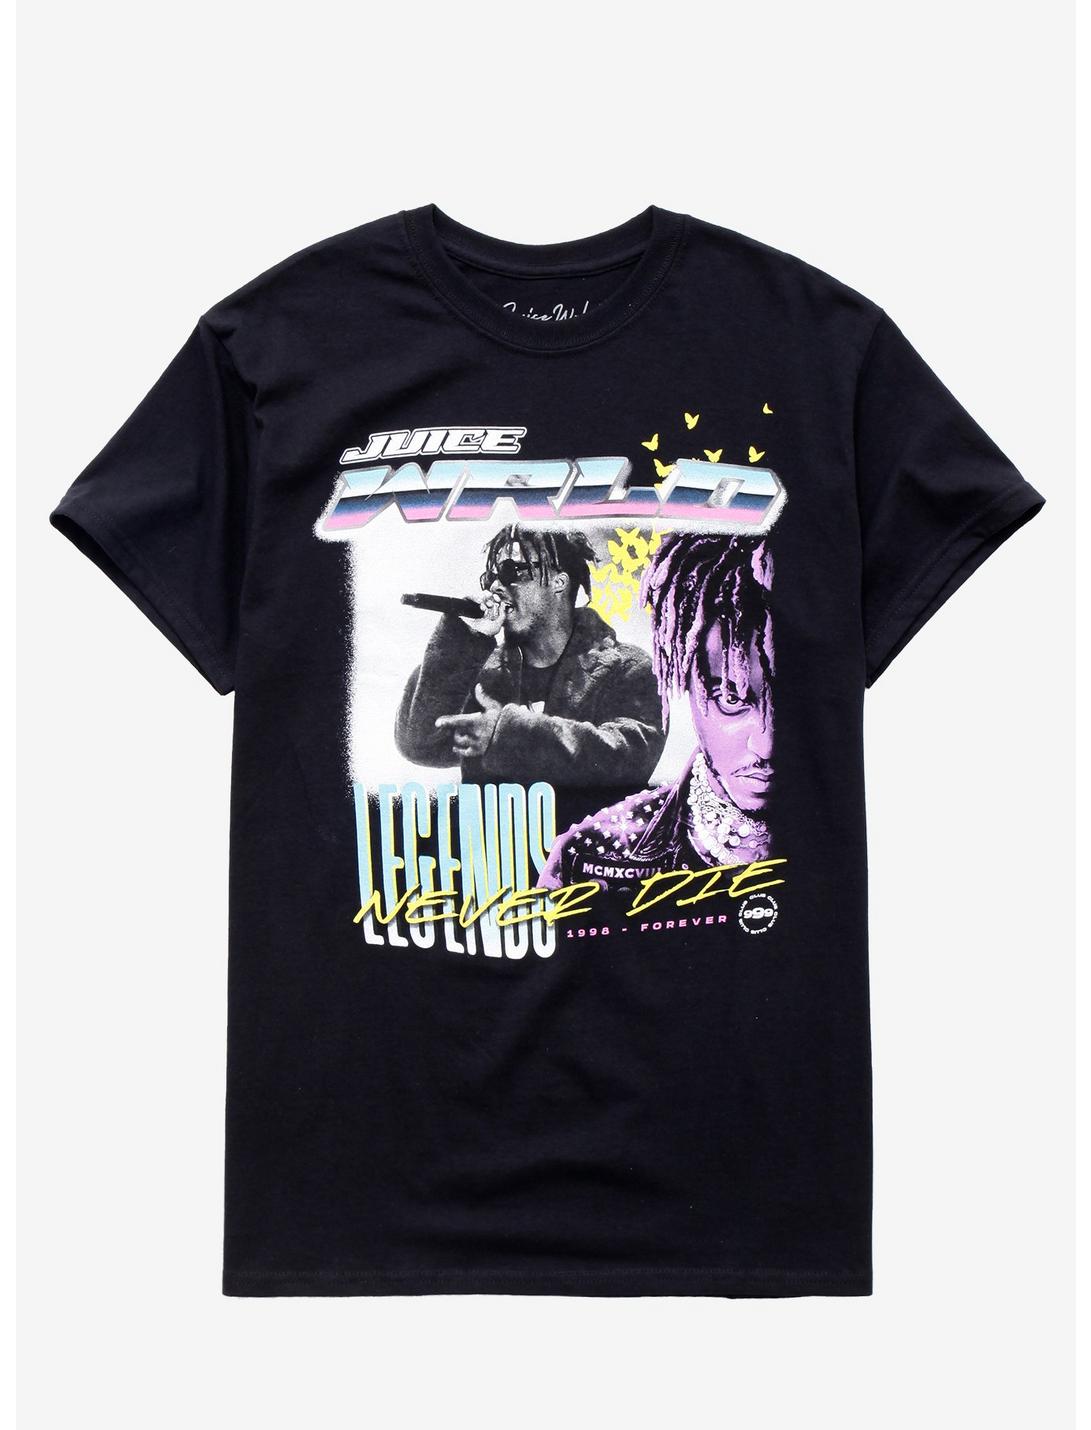 DYONG Short Sleeve Crew Neck T-Shirt for Teenagers Art Modern Hip Hop Tees 